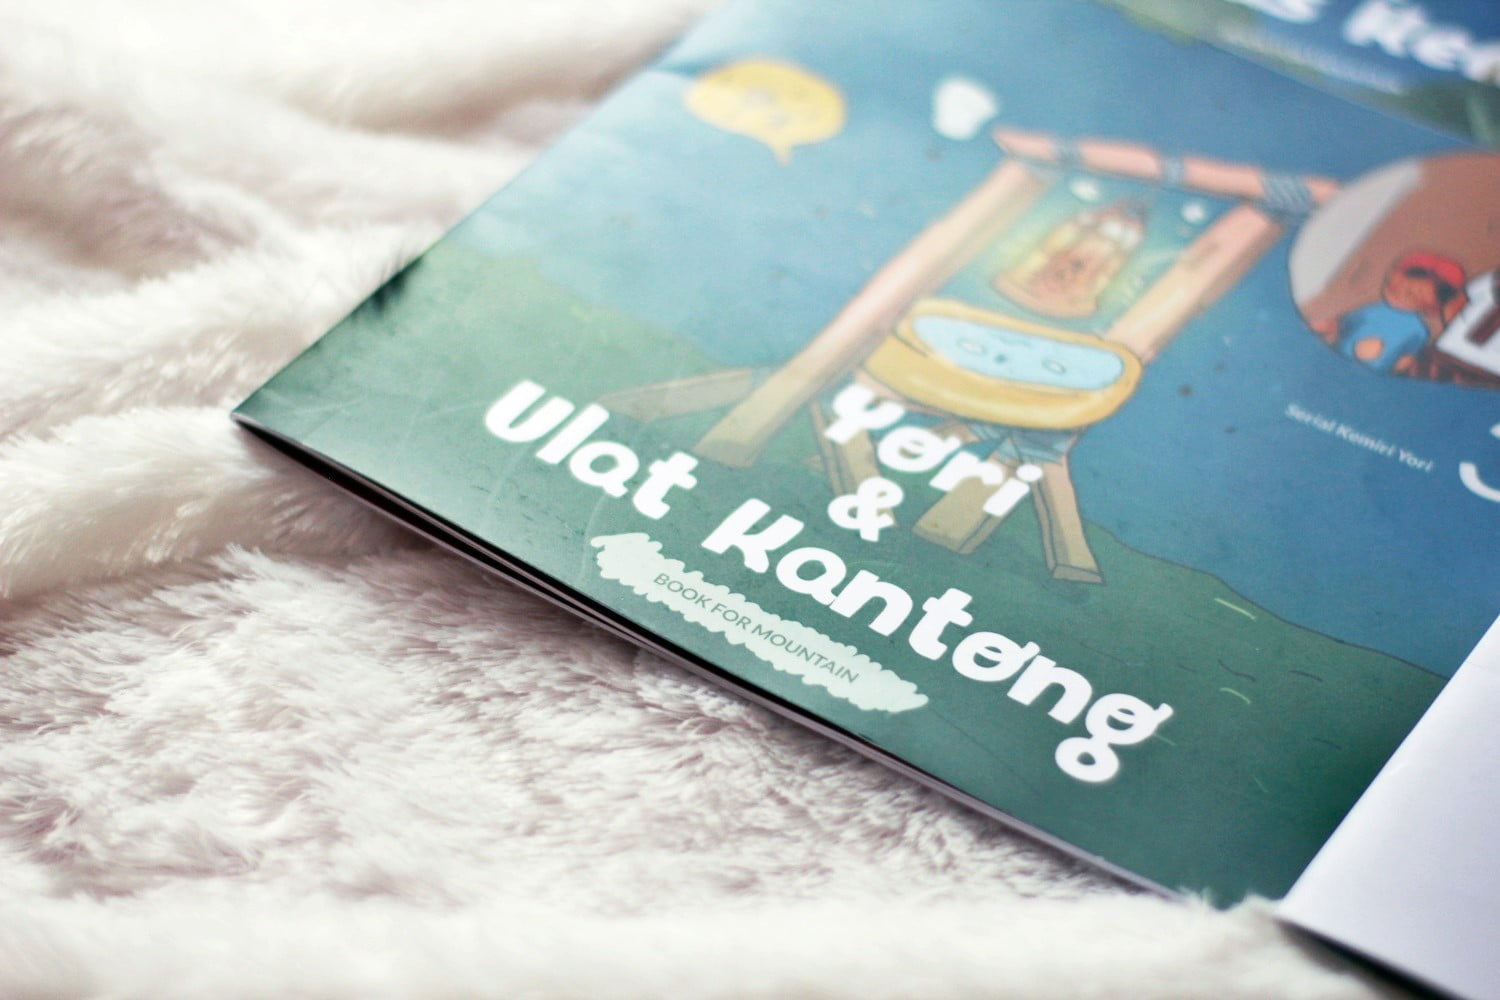 [BOOK REVIEW] Seri Kemiri Yori Karya Book For Mountain